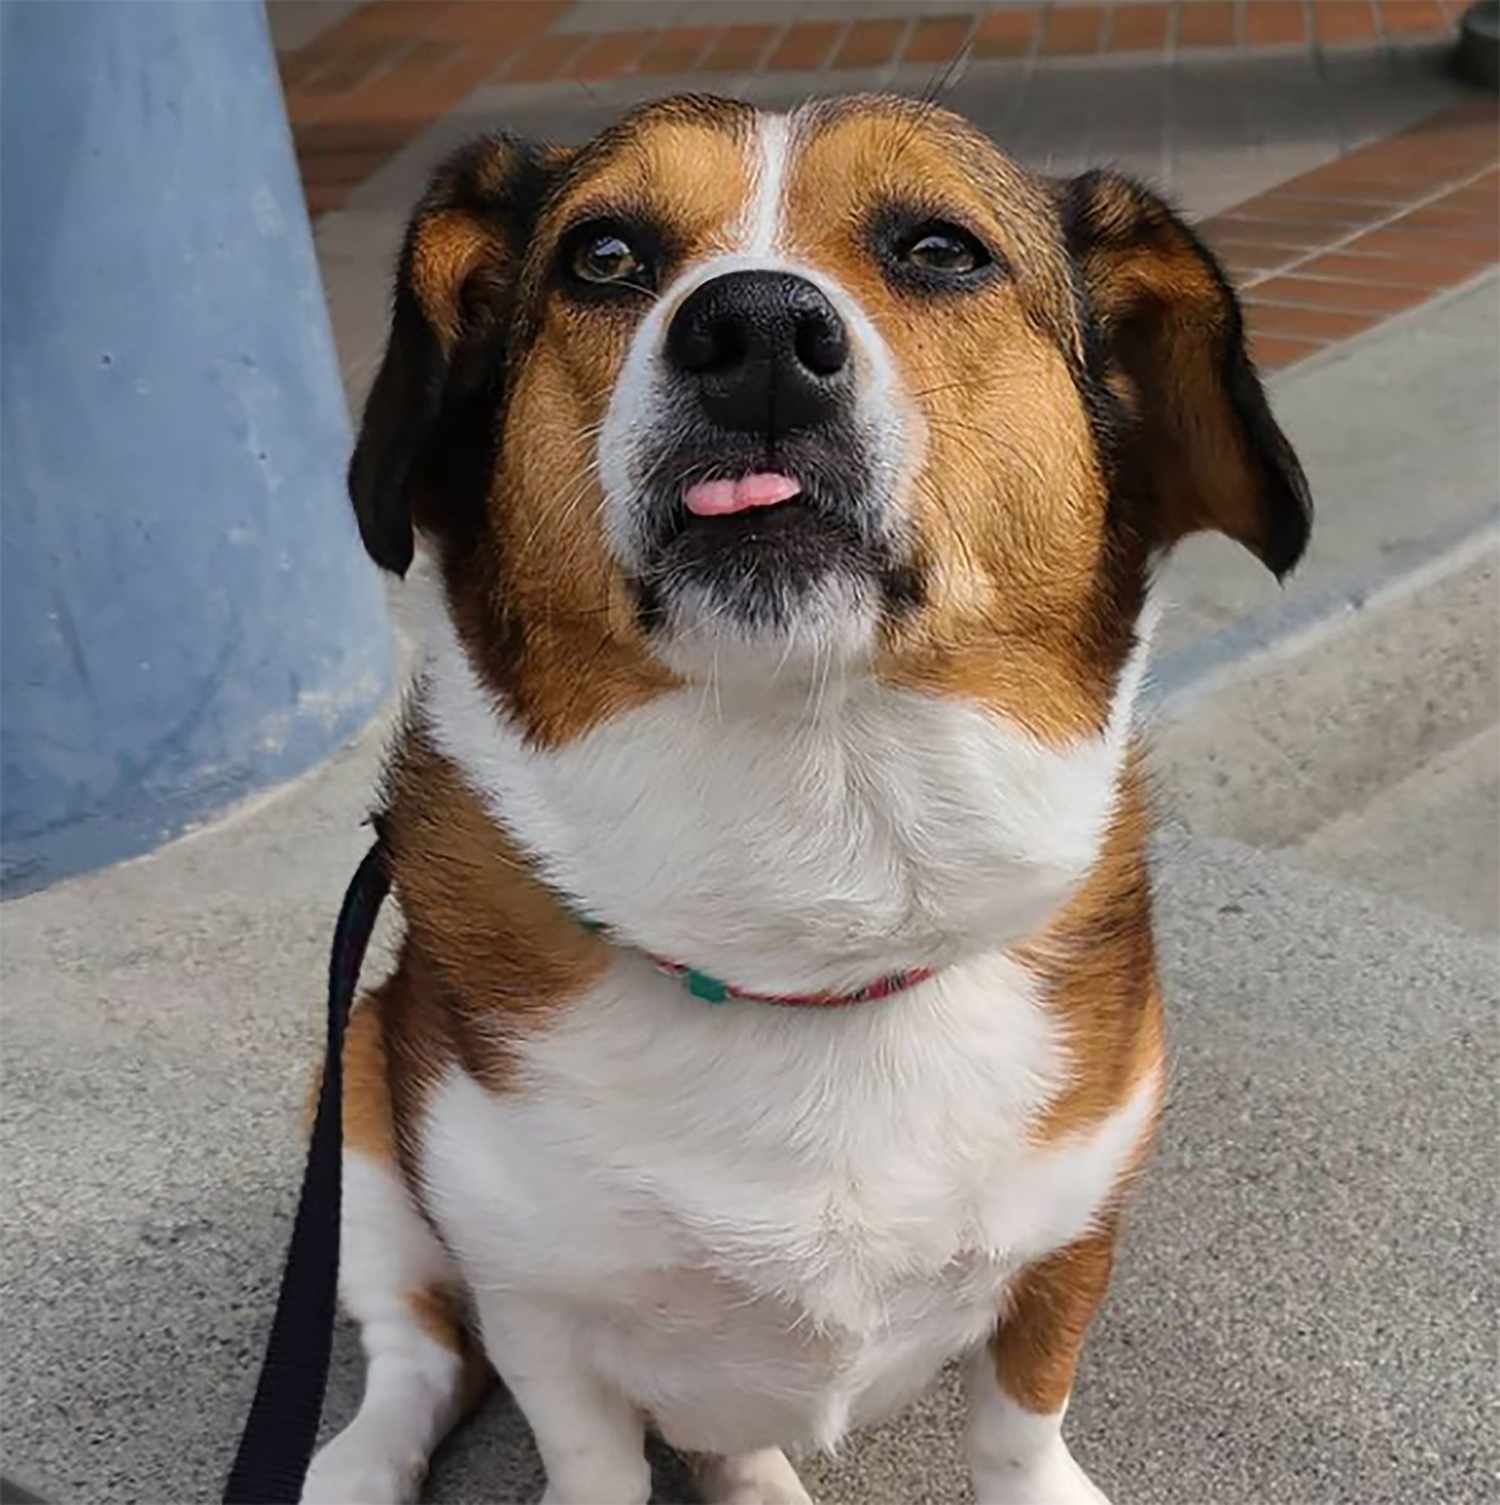 corgi beagle mix with corgi body and beagle face and ears